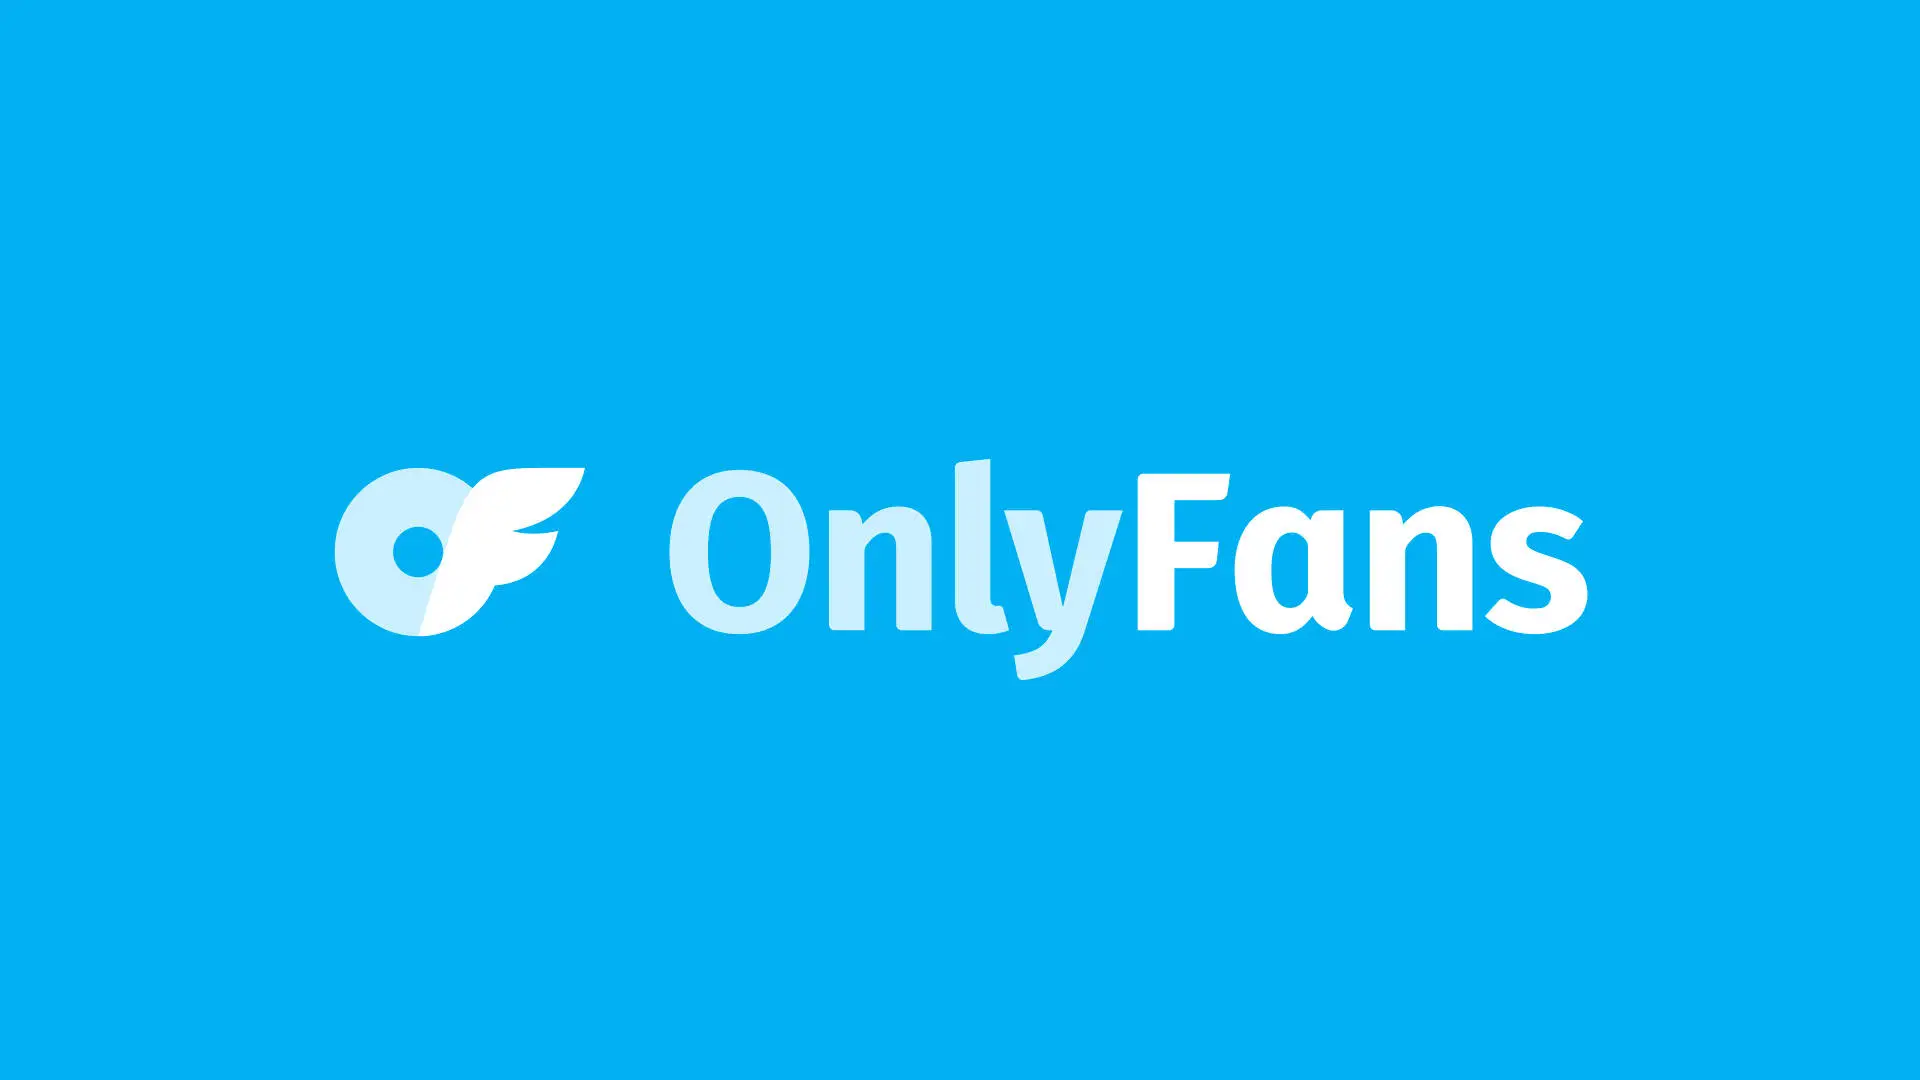 OnlyFans ha logrado aumentar la cantidad de creadores y ganancias el último año de forma considerable.